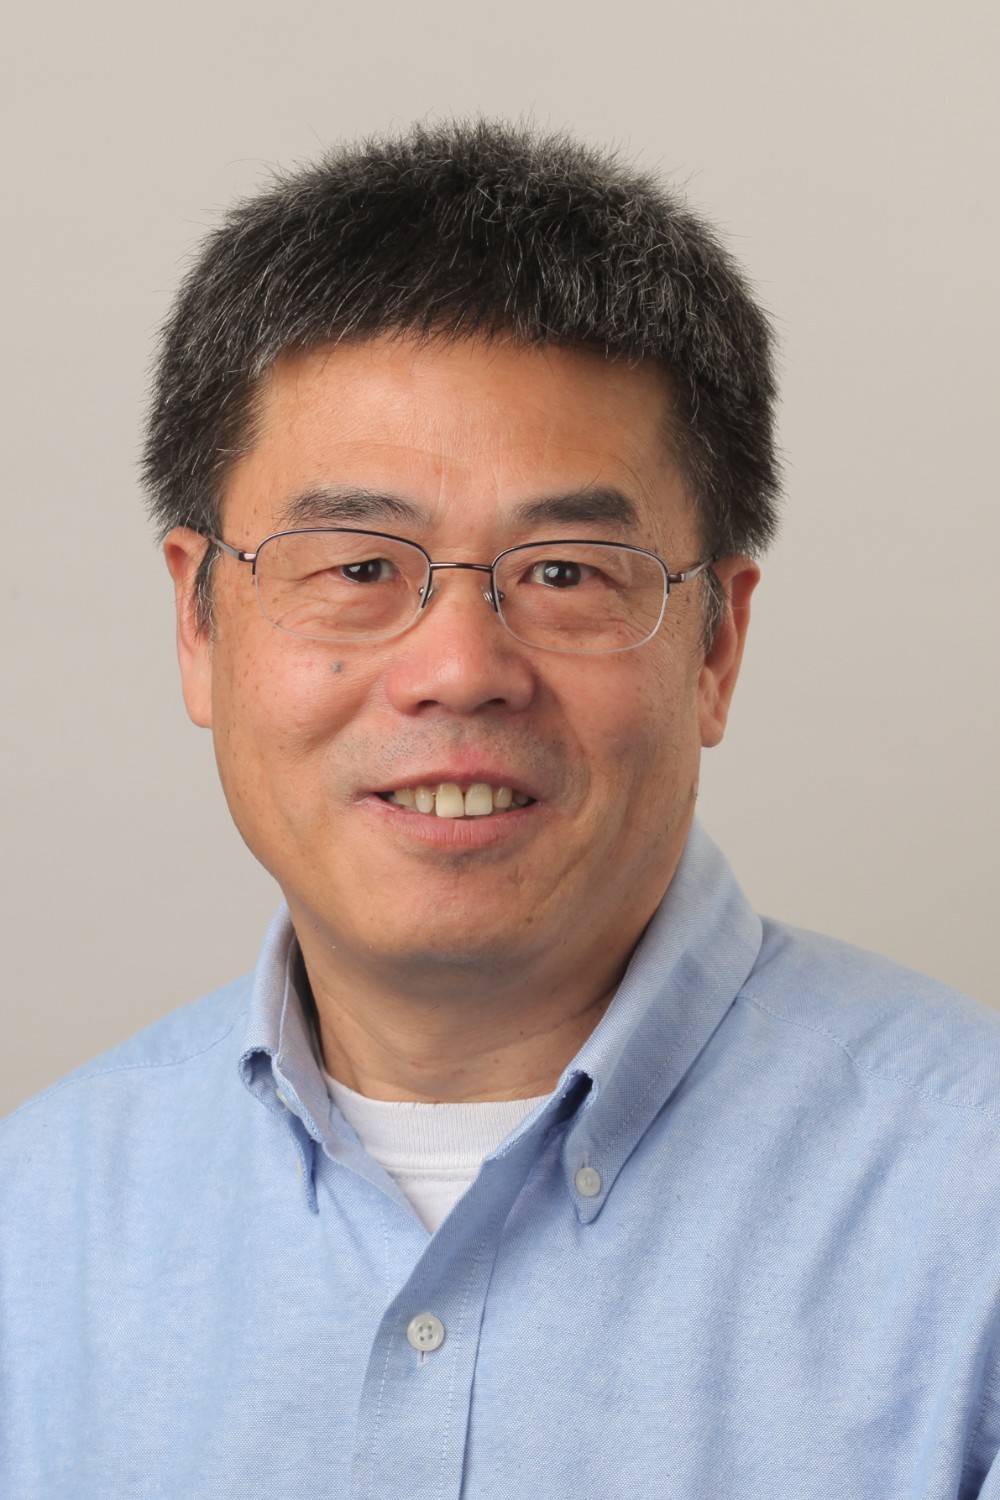 Yujing Li, PhD